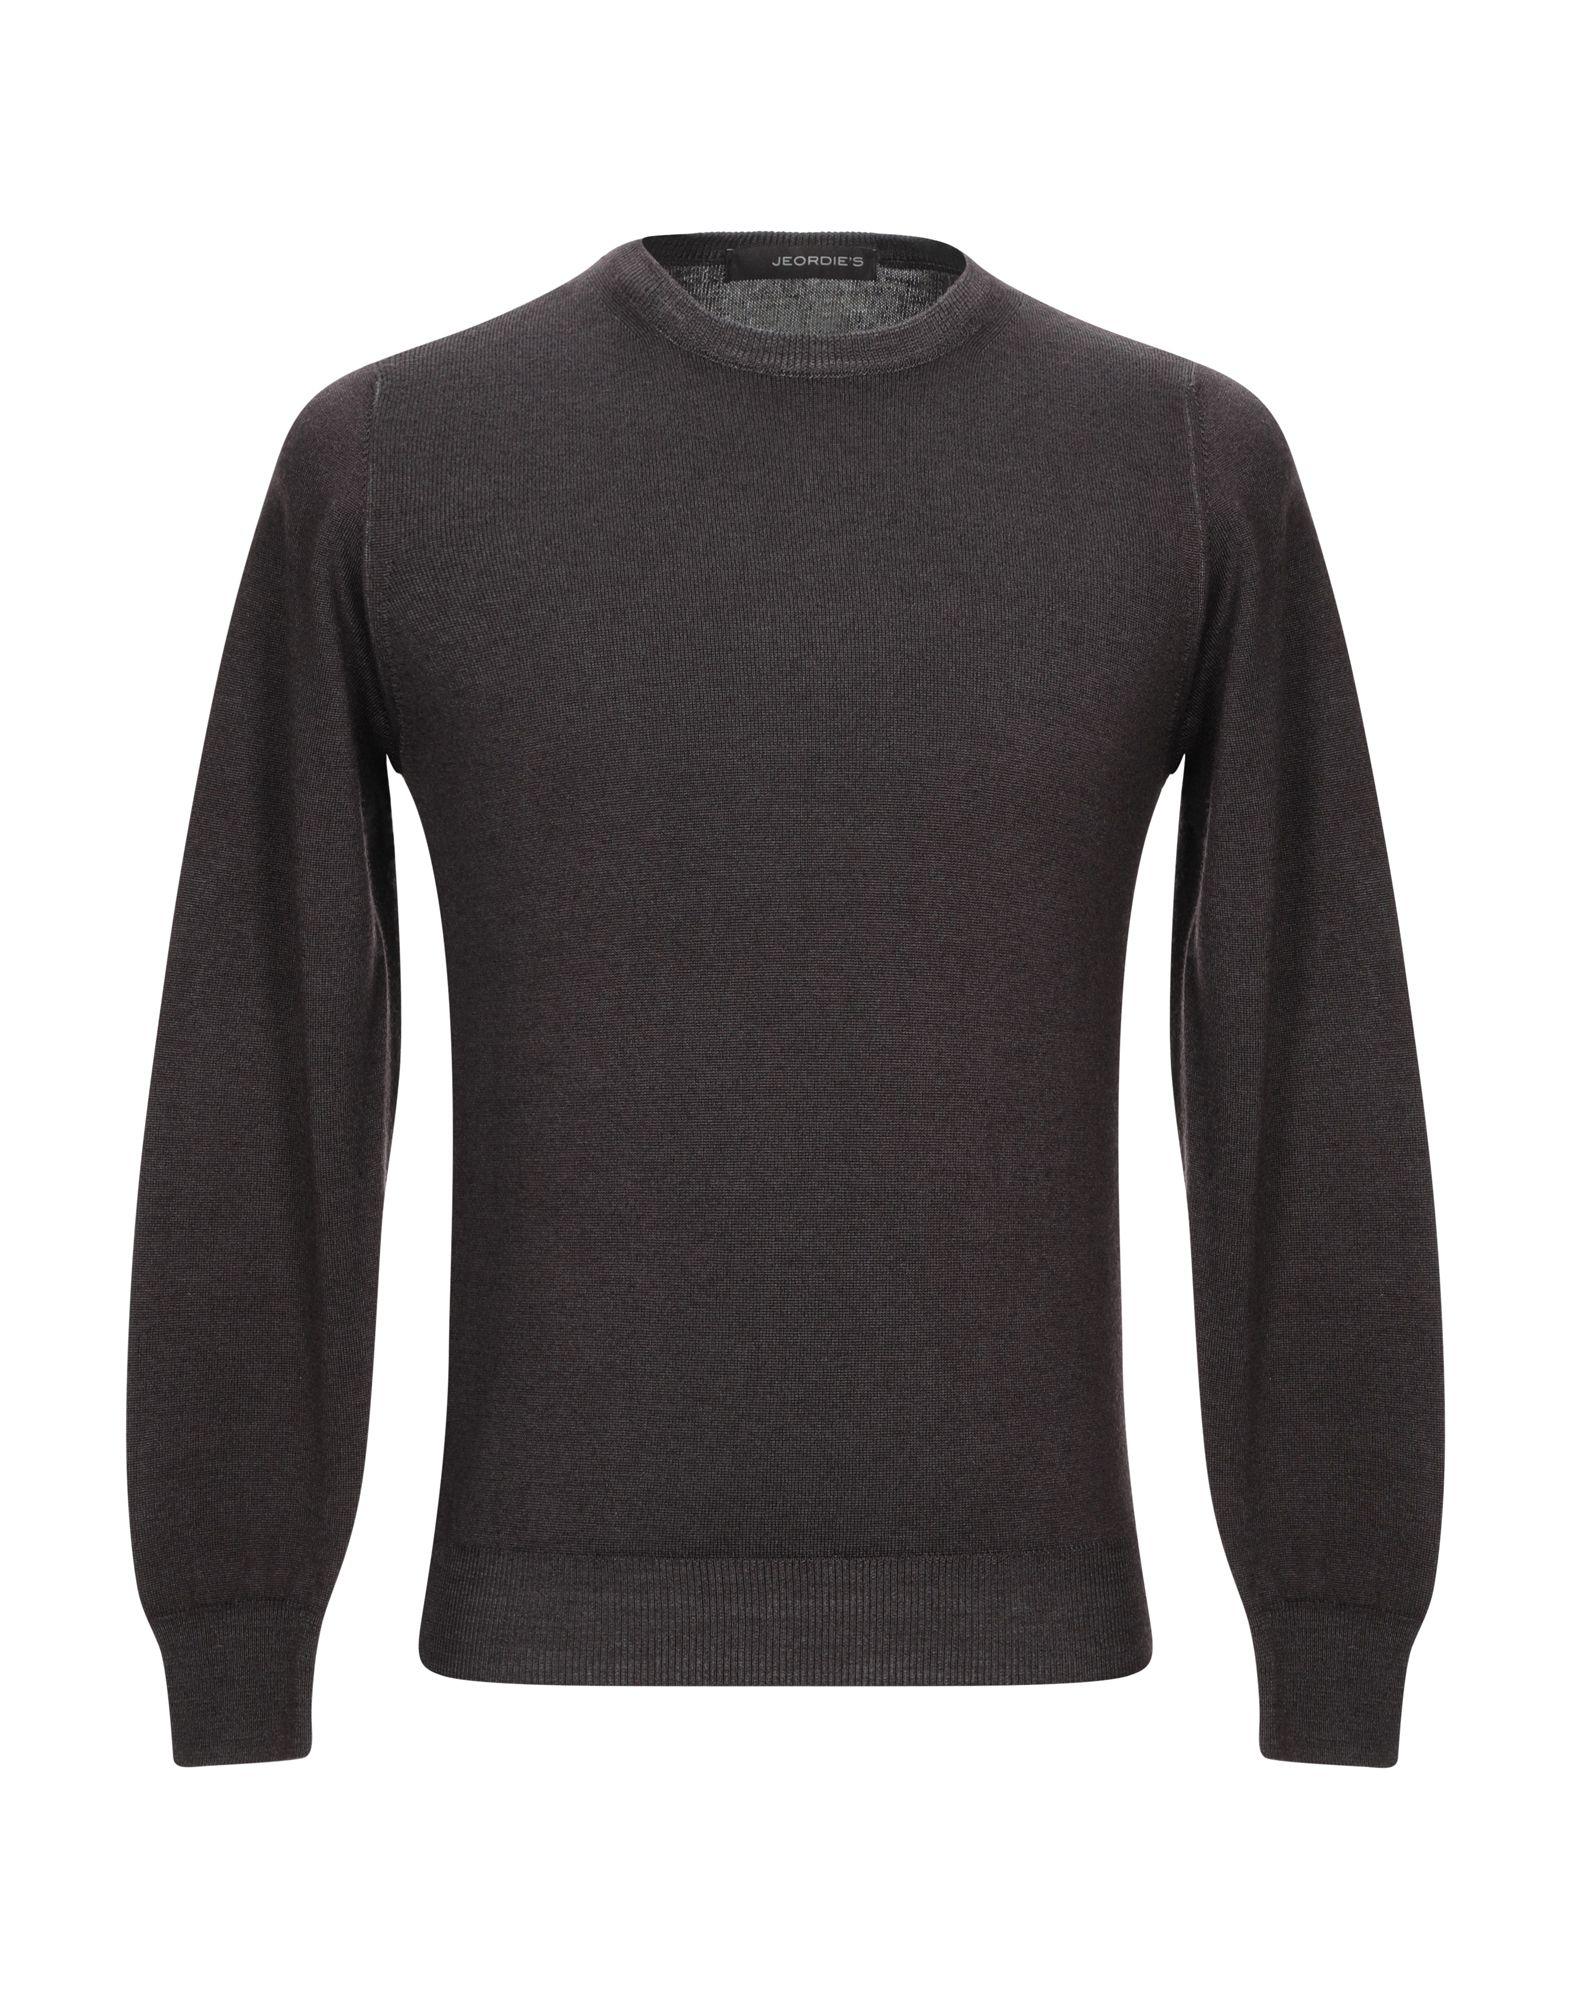 Jeordie's Wool Sweater in Dark Brown (Brown) for Men - Lyst